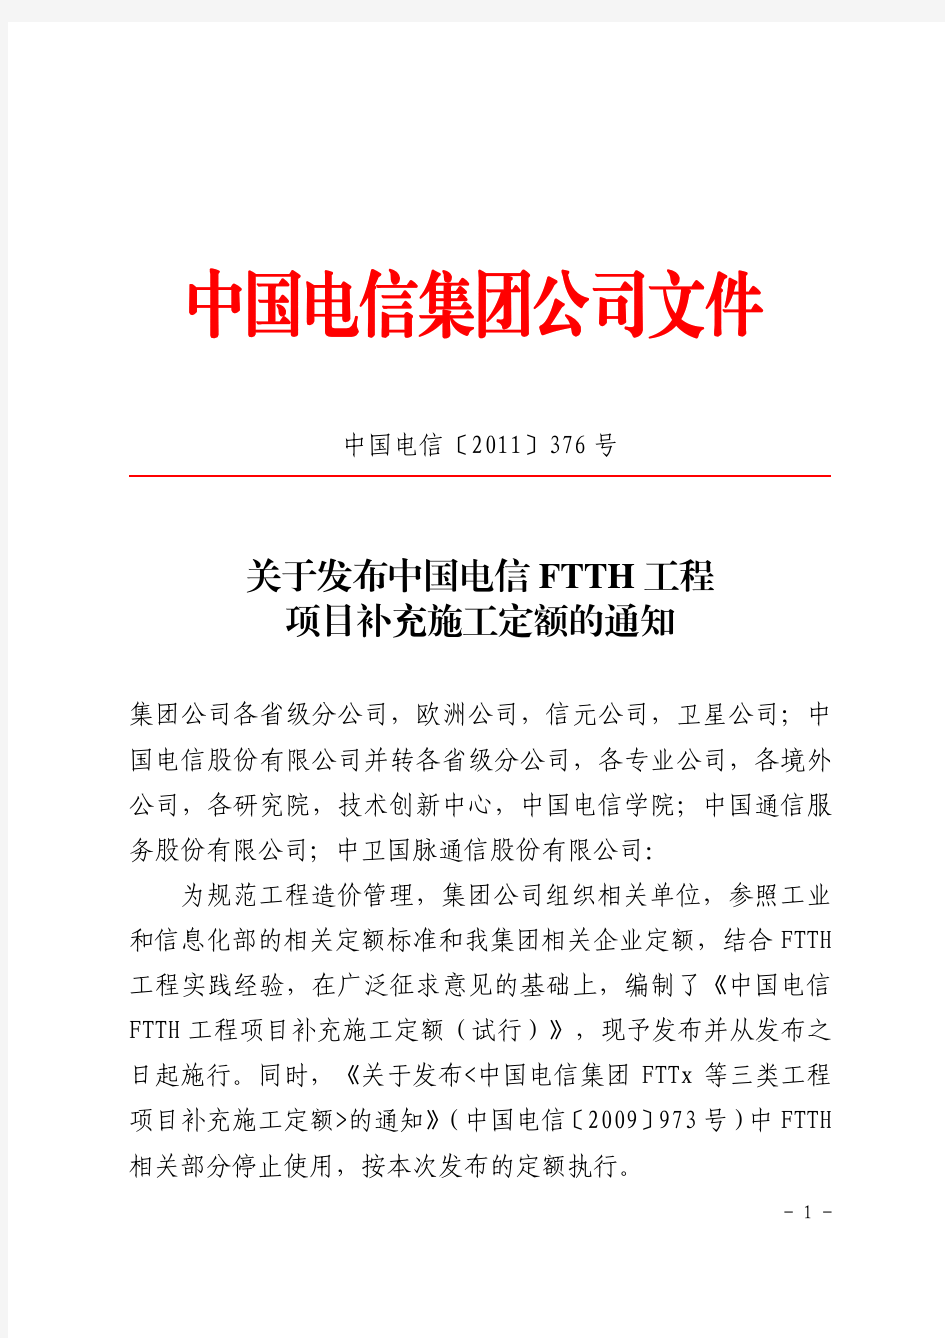 中国电信FTTH补充定额